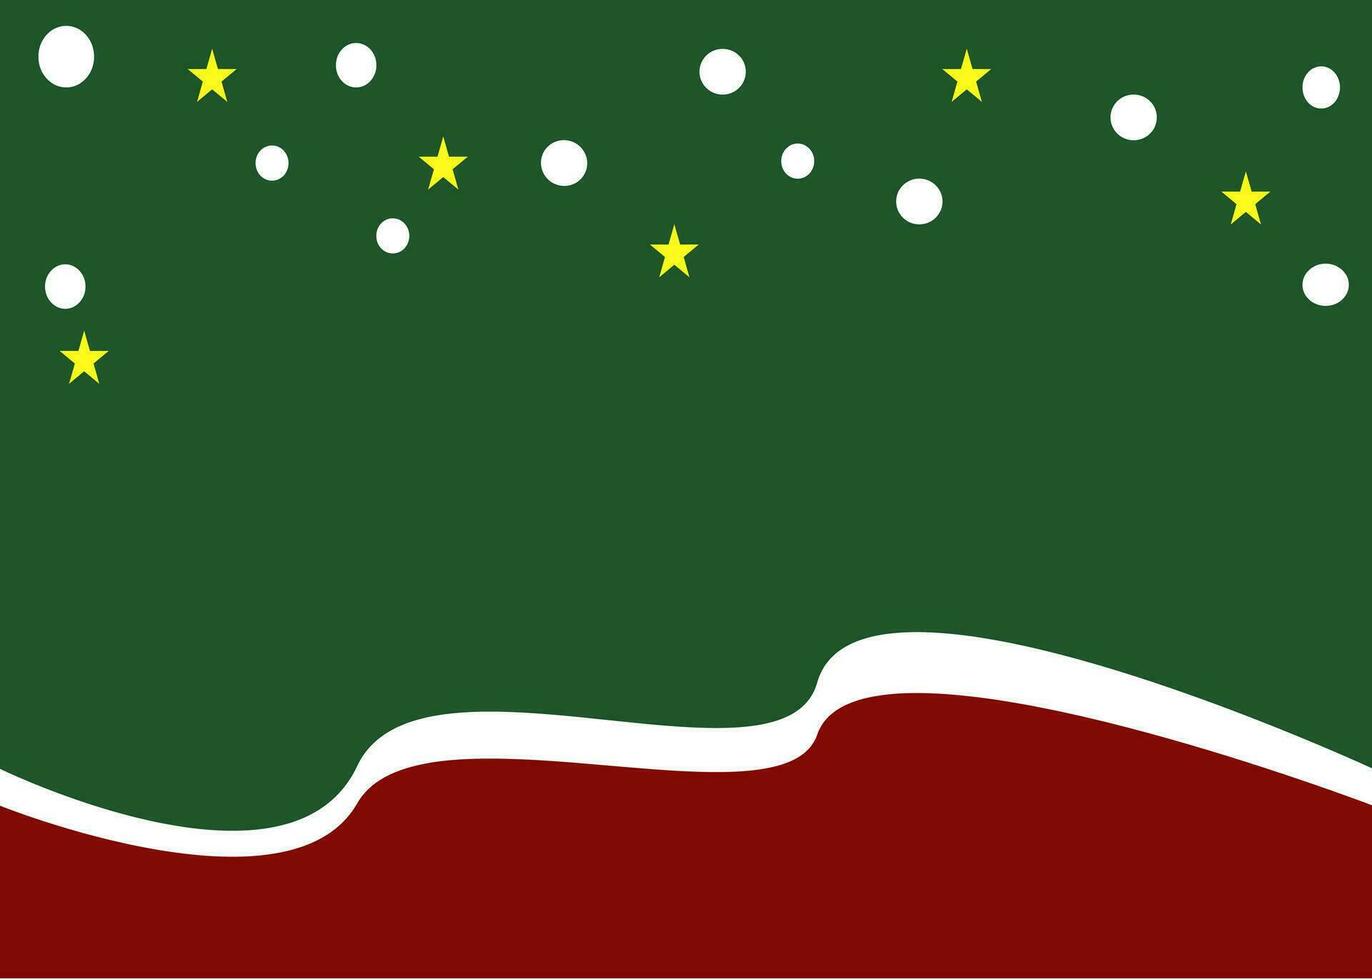 Weihnachten Hintergrund dekorieren durch Schnee Star und Grün rot Hintergrund vektor